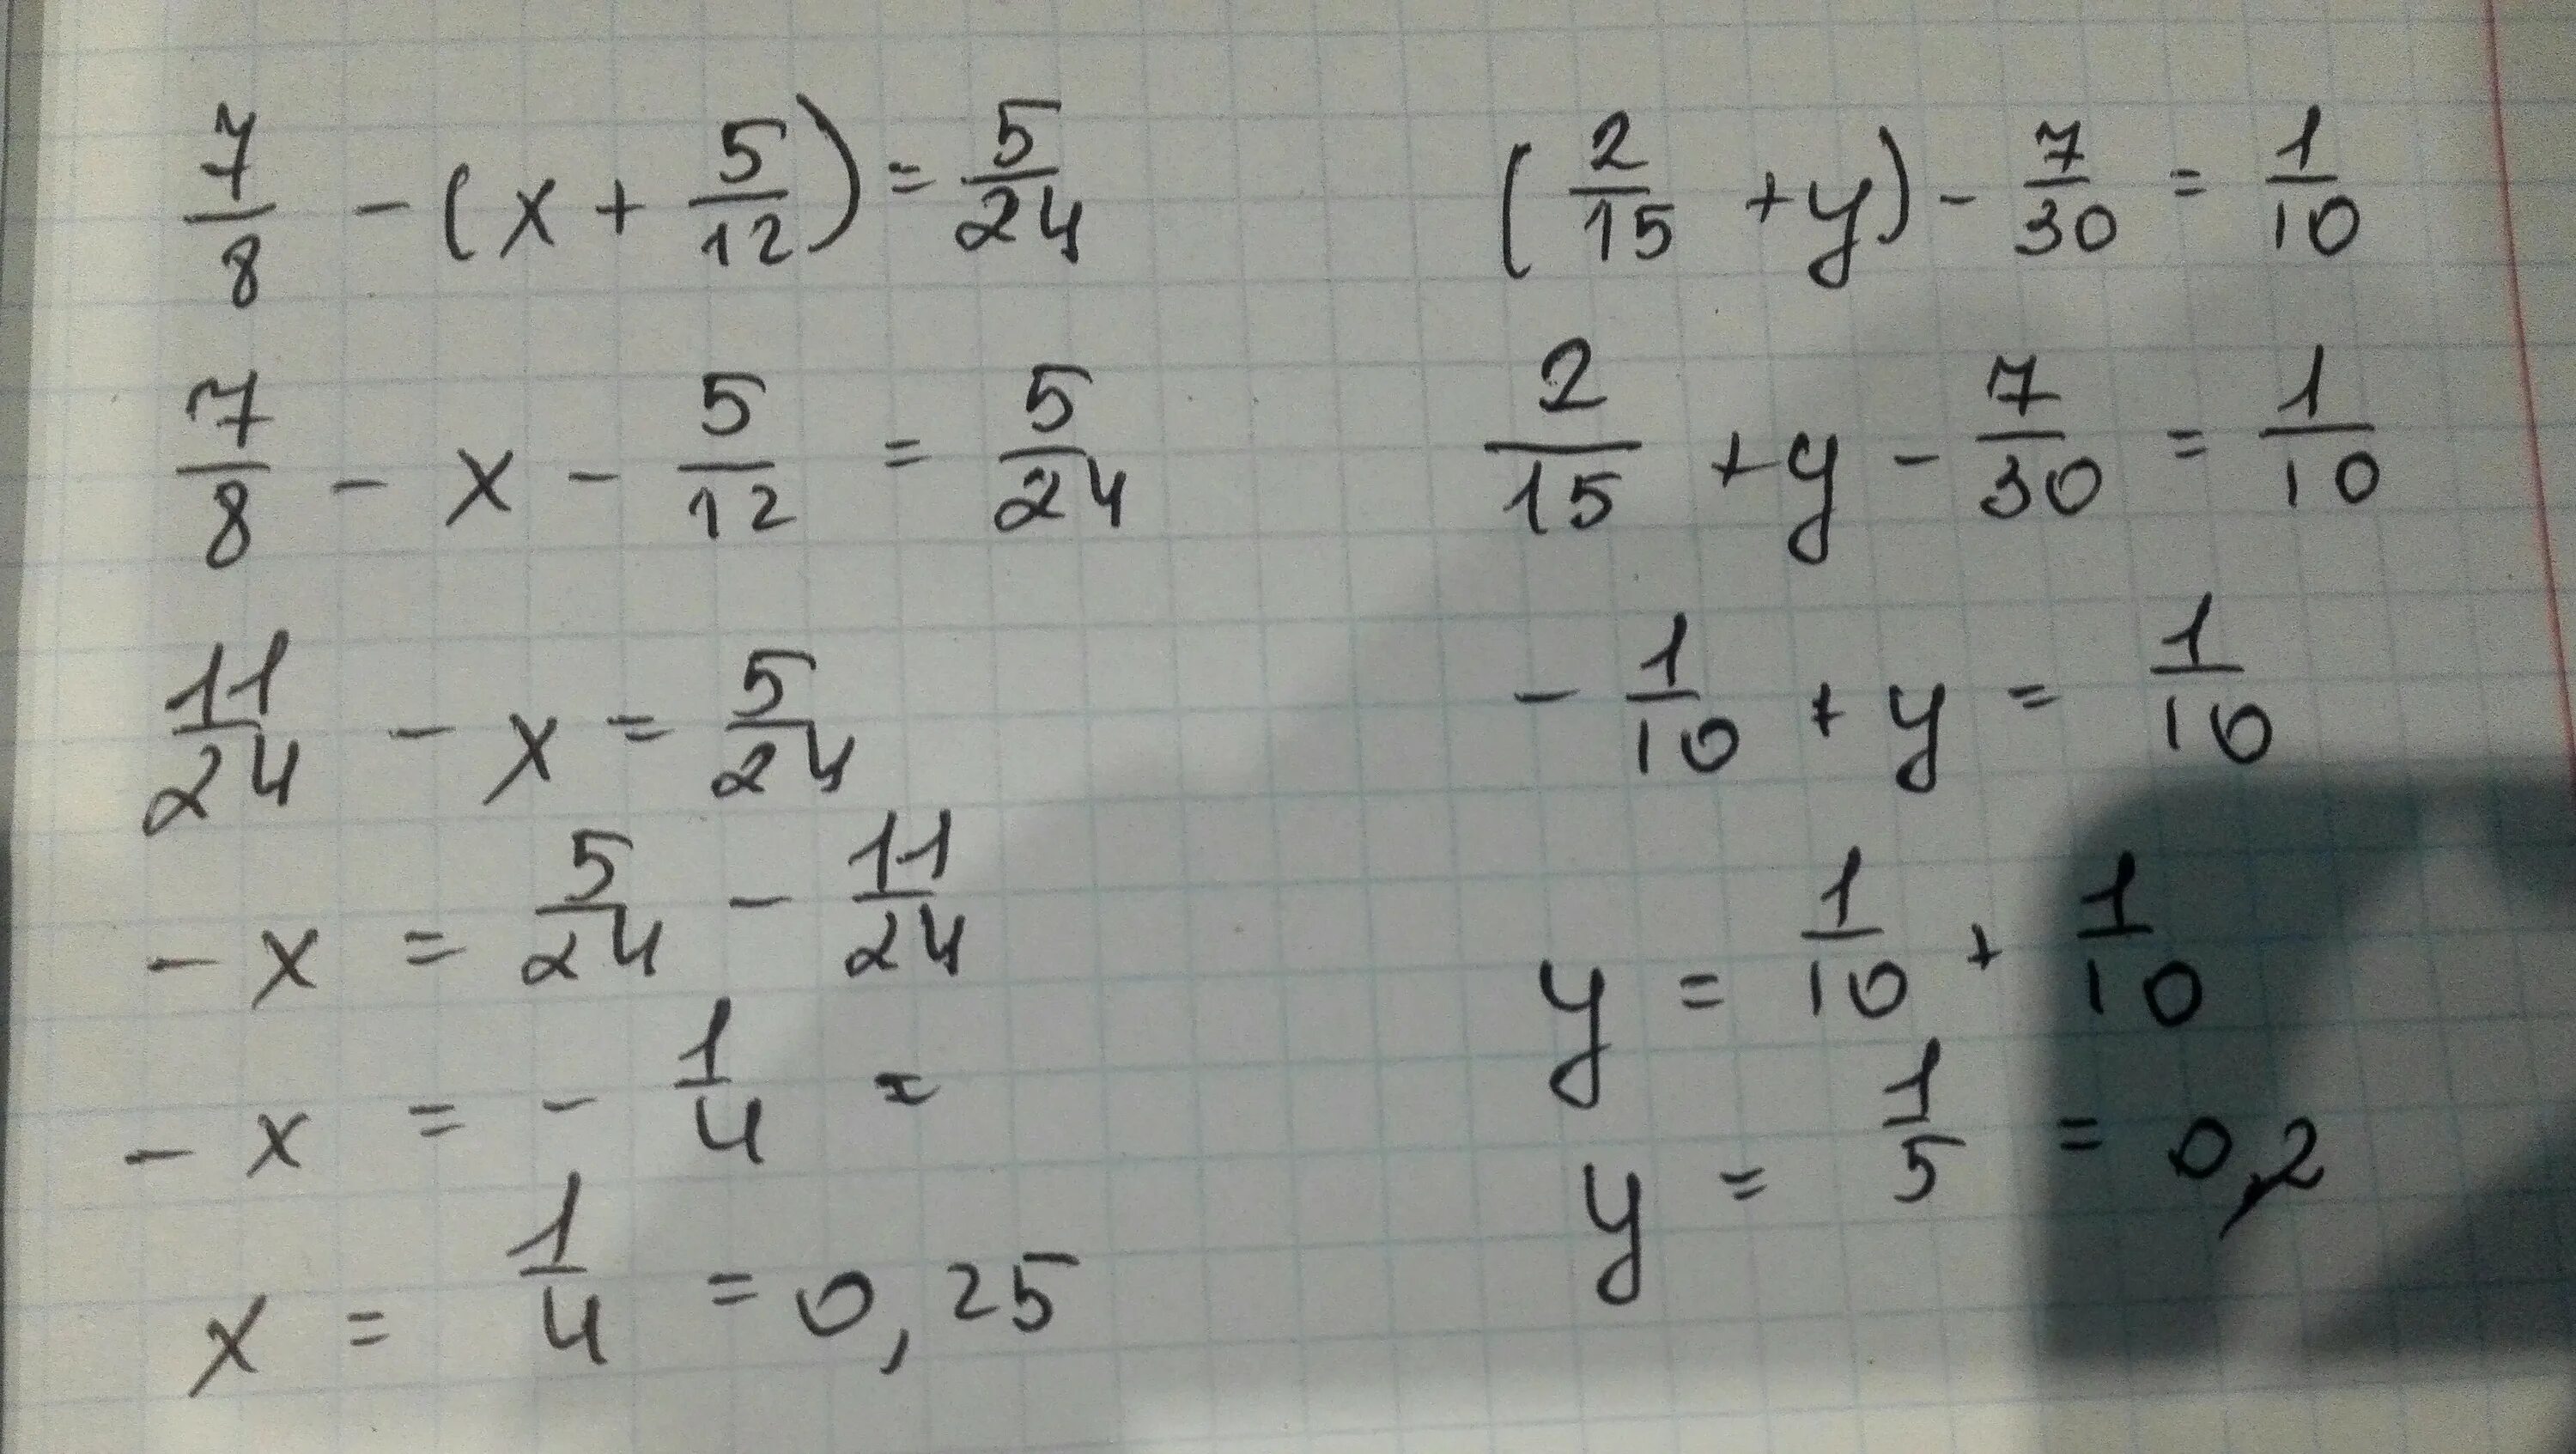 2 8 15 у 1 7 10. ( 2/15+1 7/12) ×30/103-2 2 1/4 ×9/32+2 1/3 решение. ( 15 2 + 1 12 7 ) ⋅ 103 30 − 2 : 2 4 1 ⋅ 32 9 + 2 4 3. (2/15+1 7/12) *30/103-2:2 1/4*9/32+2 1/3= Отв. 10) -30-(12-2x)=8-2x.